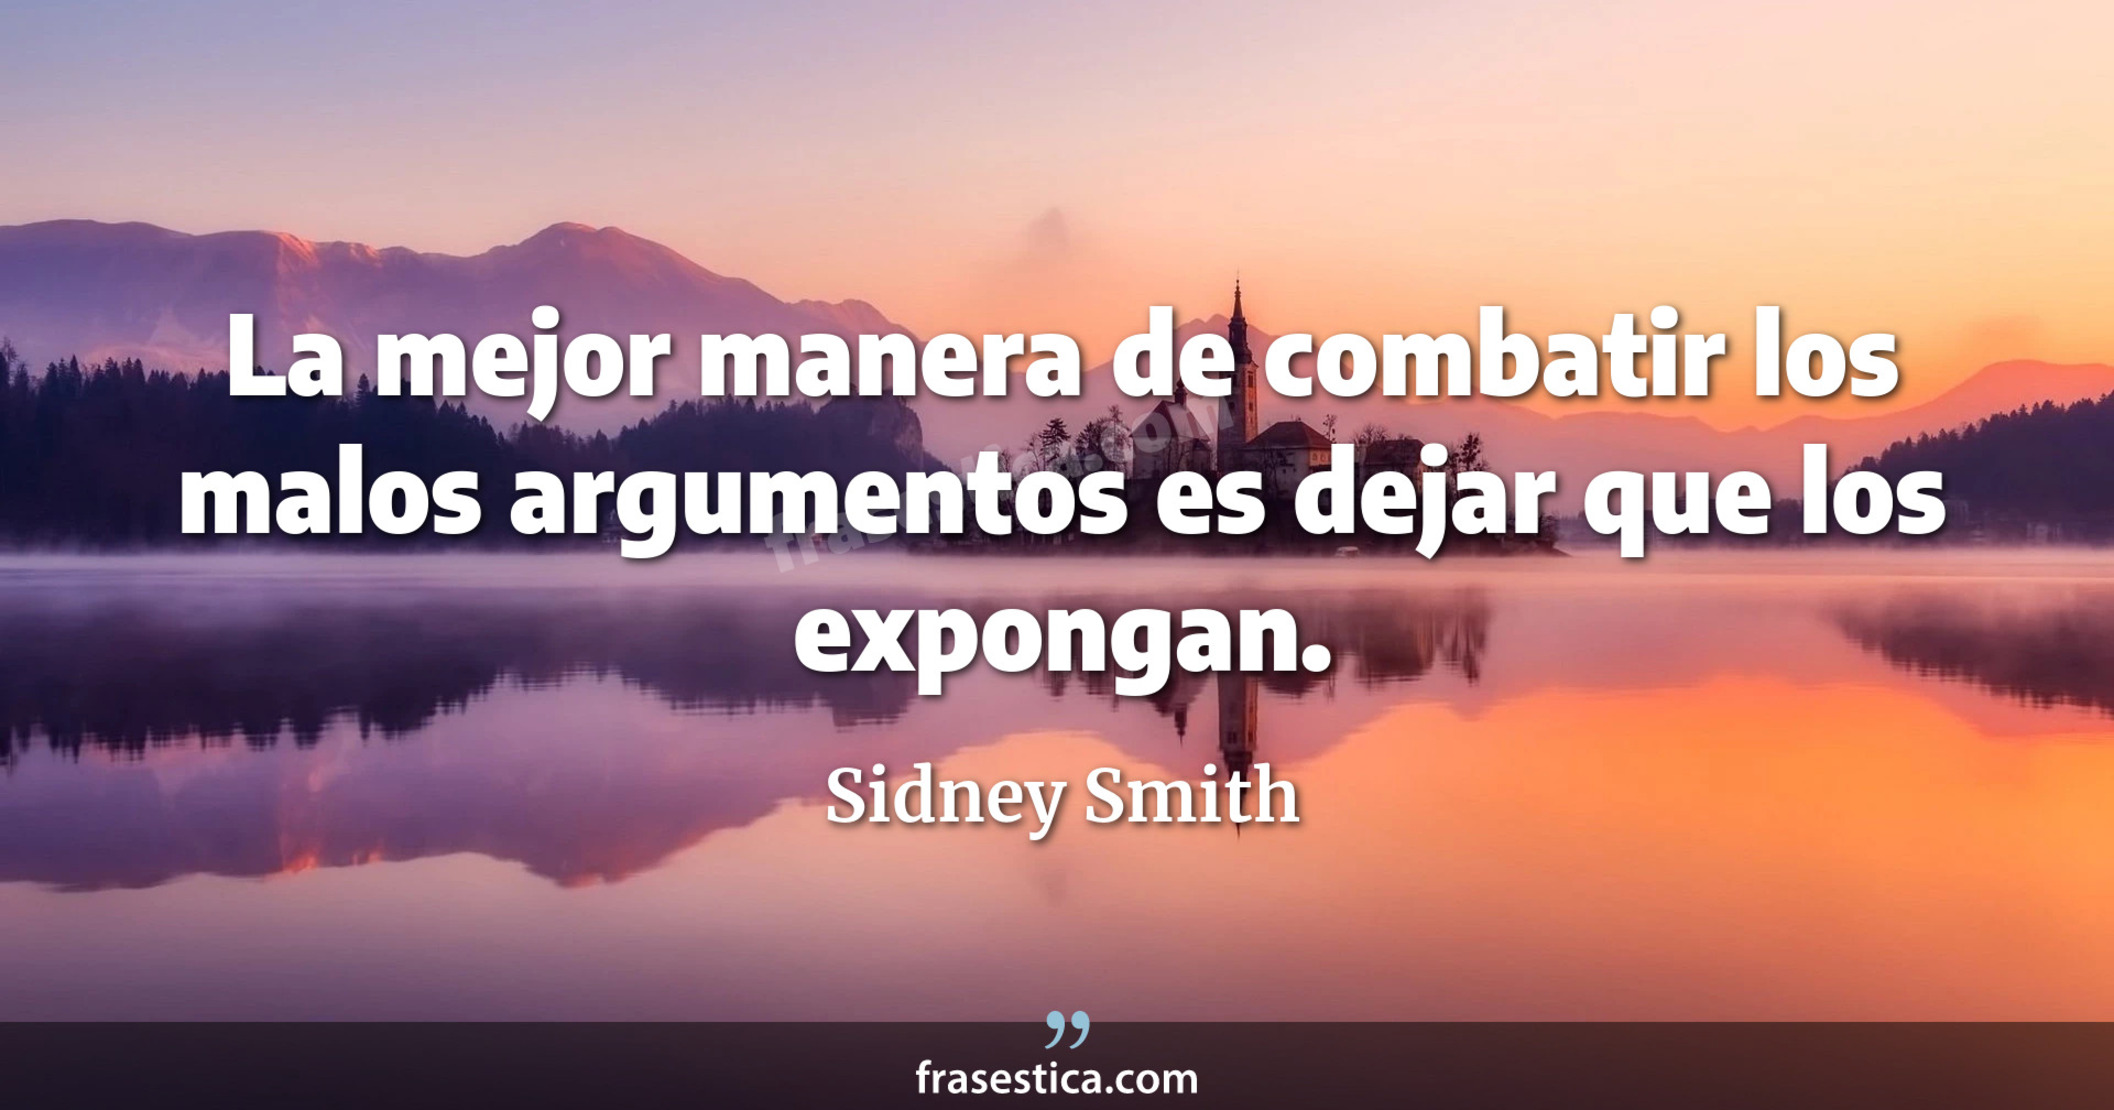 La mejor manera de combatir los malos argumentos es dejar que los expongan. - Sidney Smith